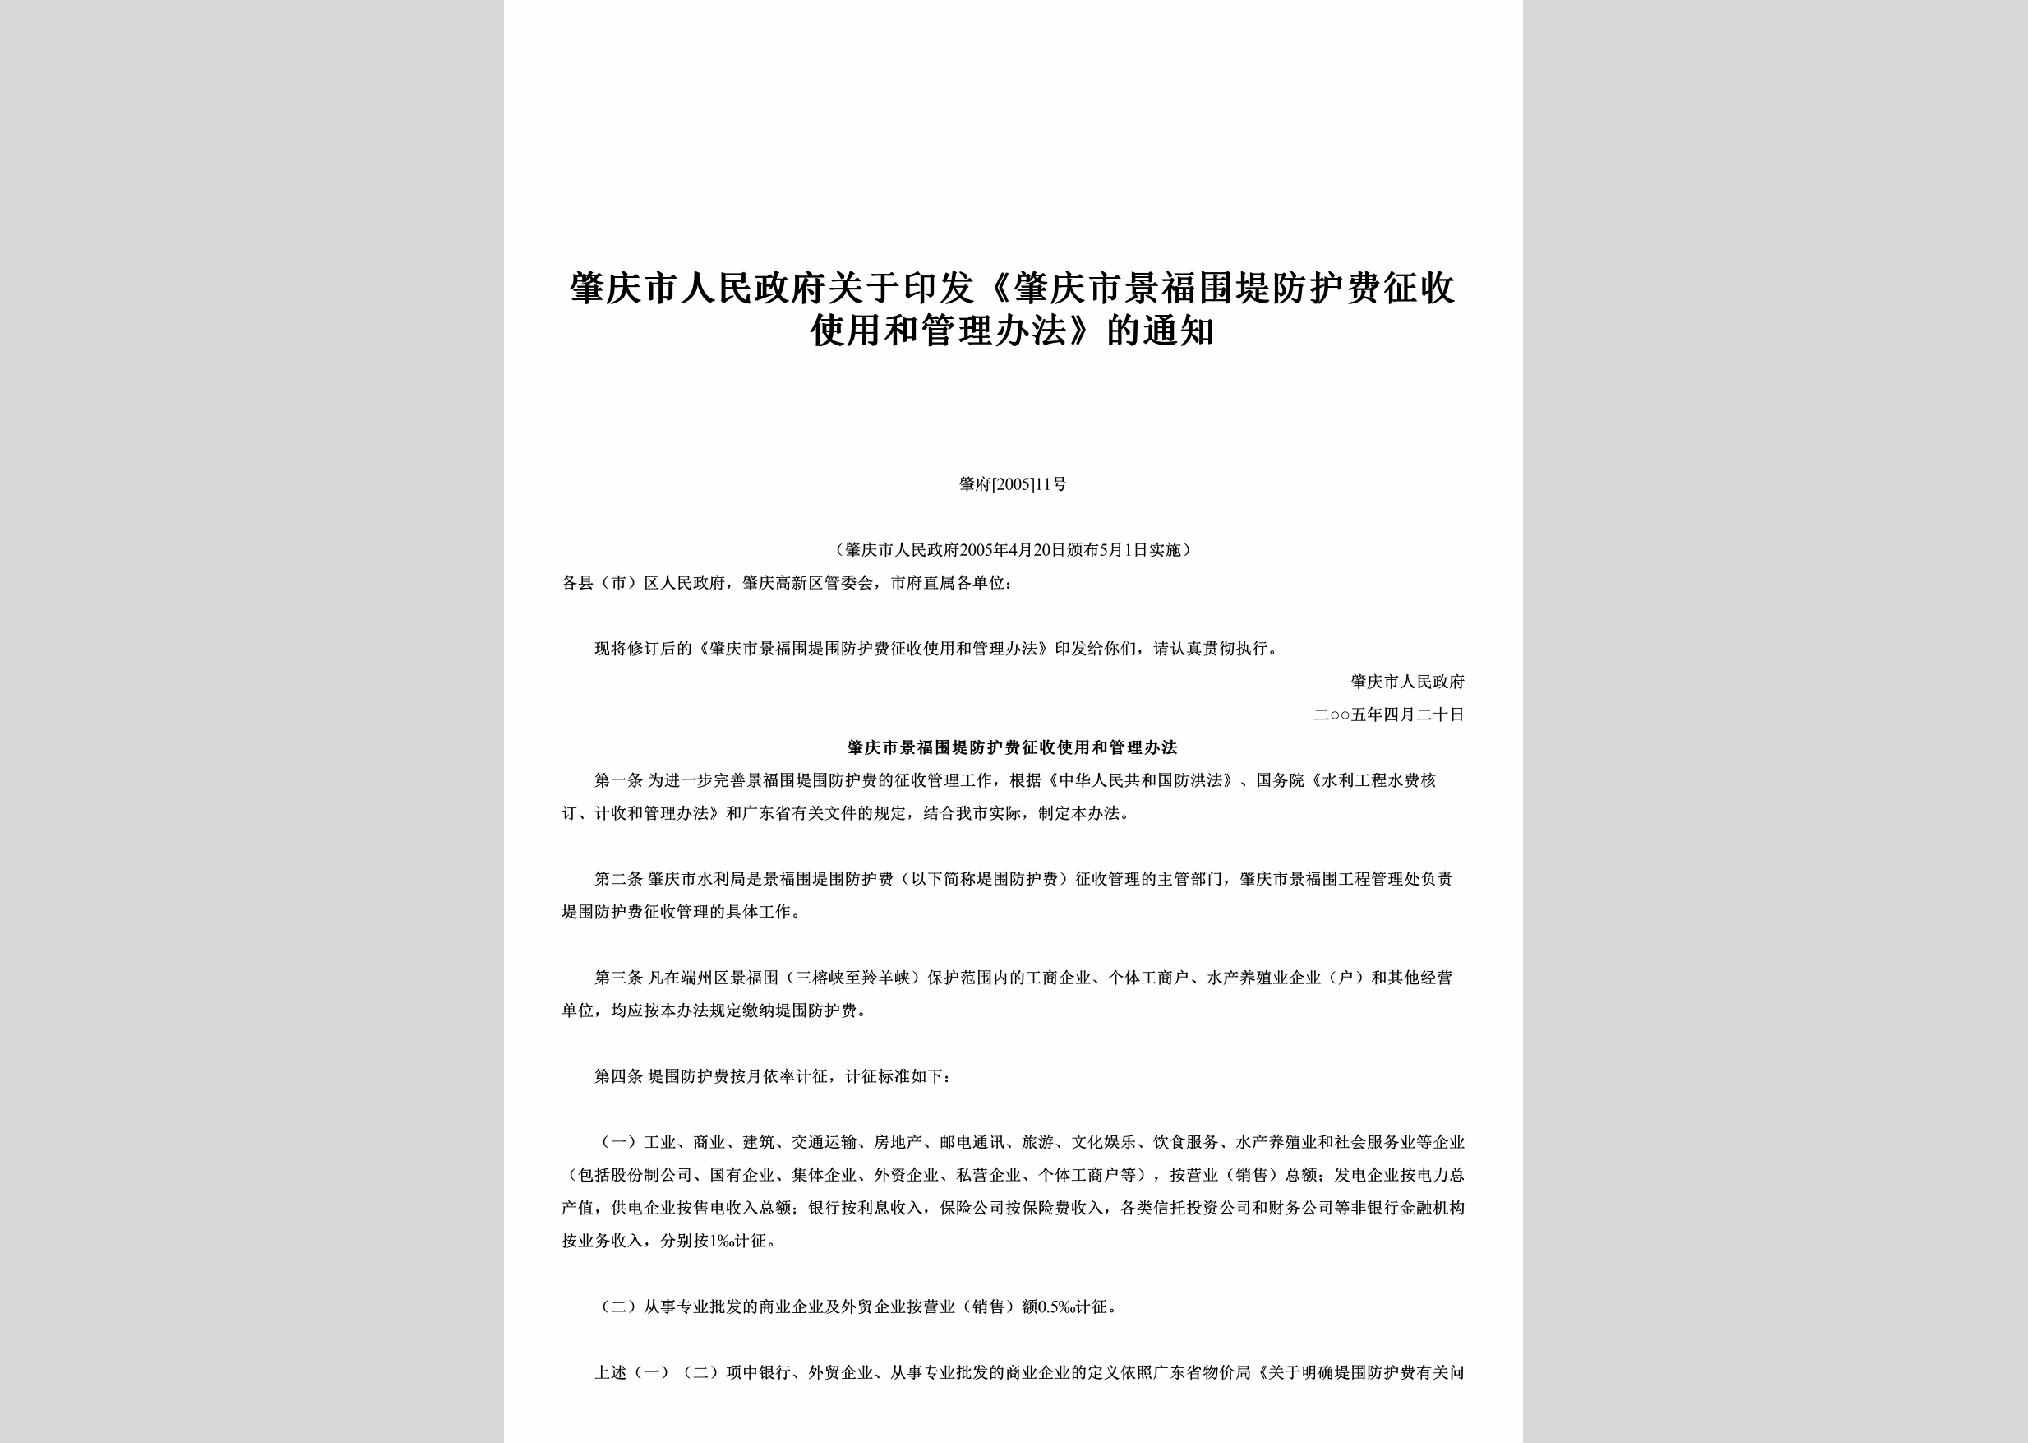 肇府[2005]11号：关于印发《肇庆市景福围堤防护费征收使用和管理办法》的通知